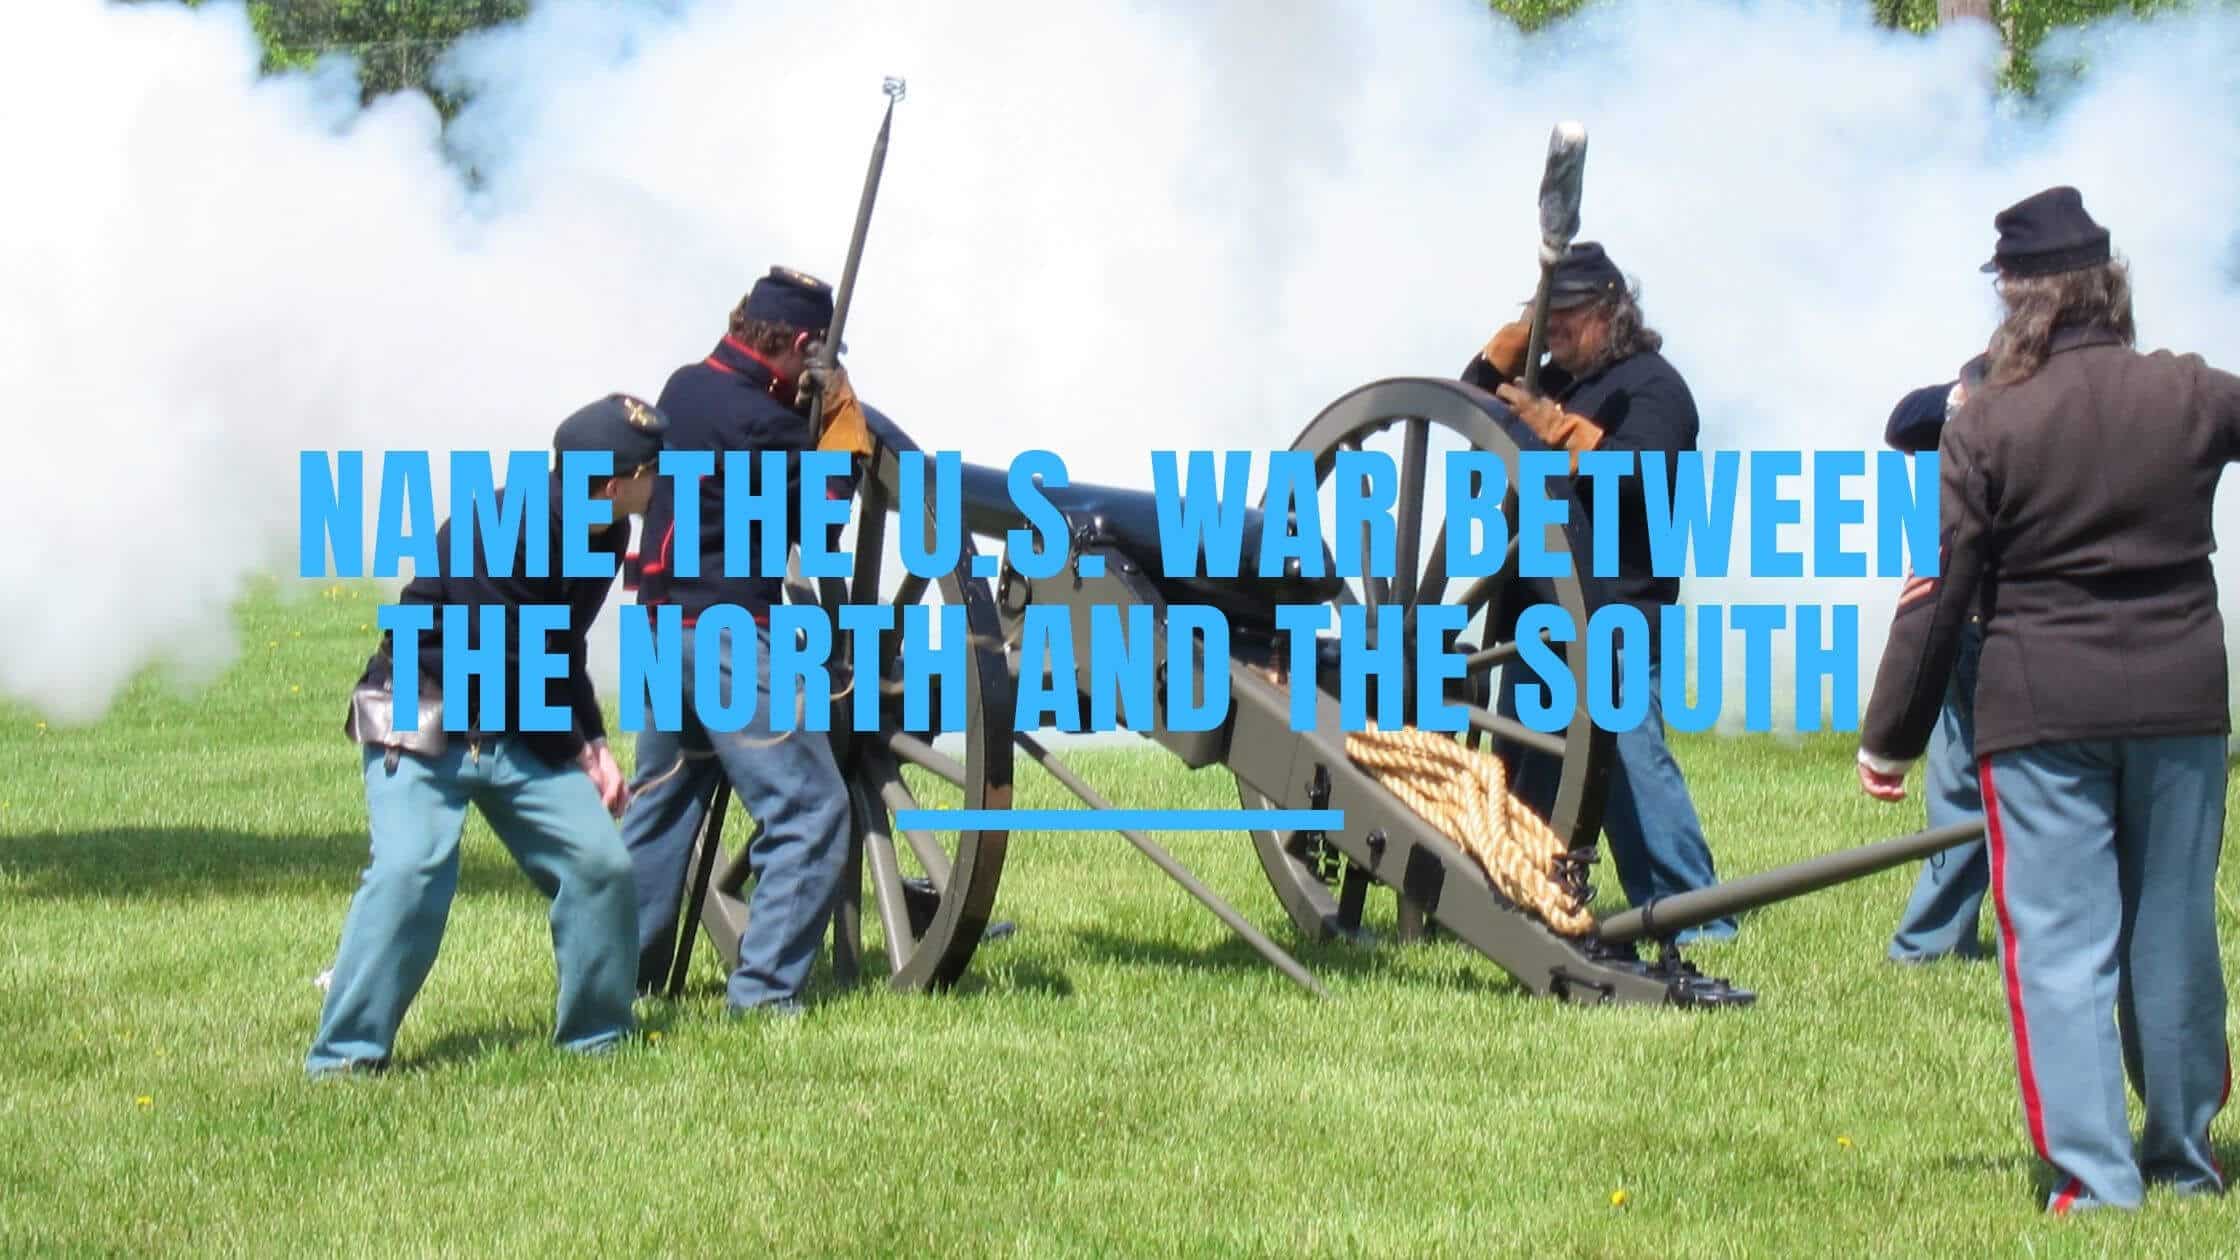 Civil War reenactment